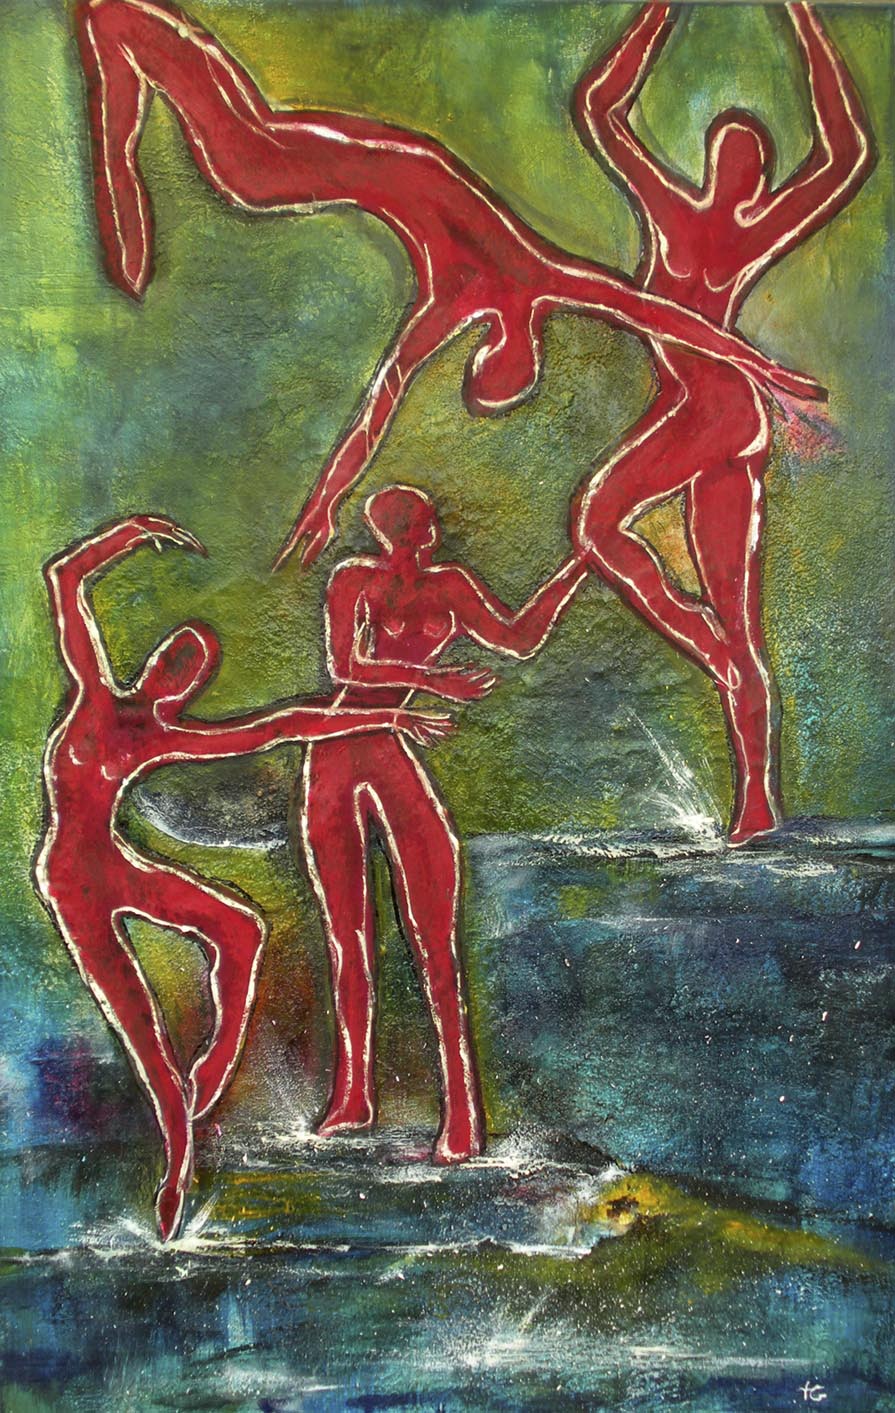 Tanz auf dem Wasser, Textilcollage, 75 x 115 cm.